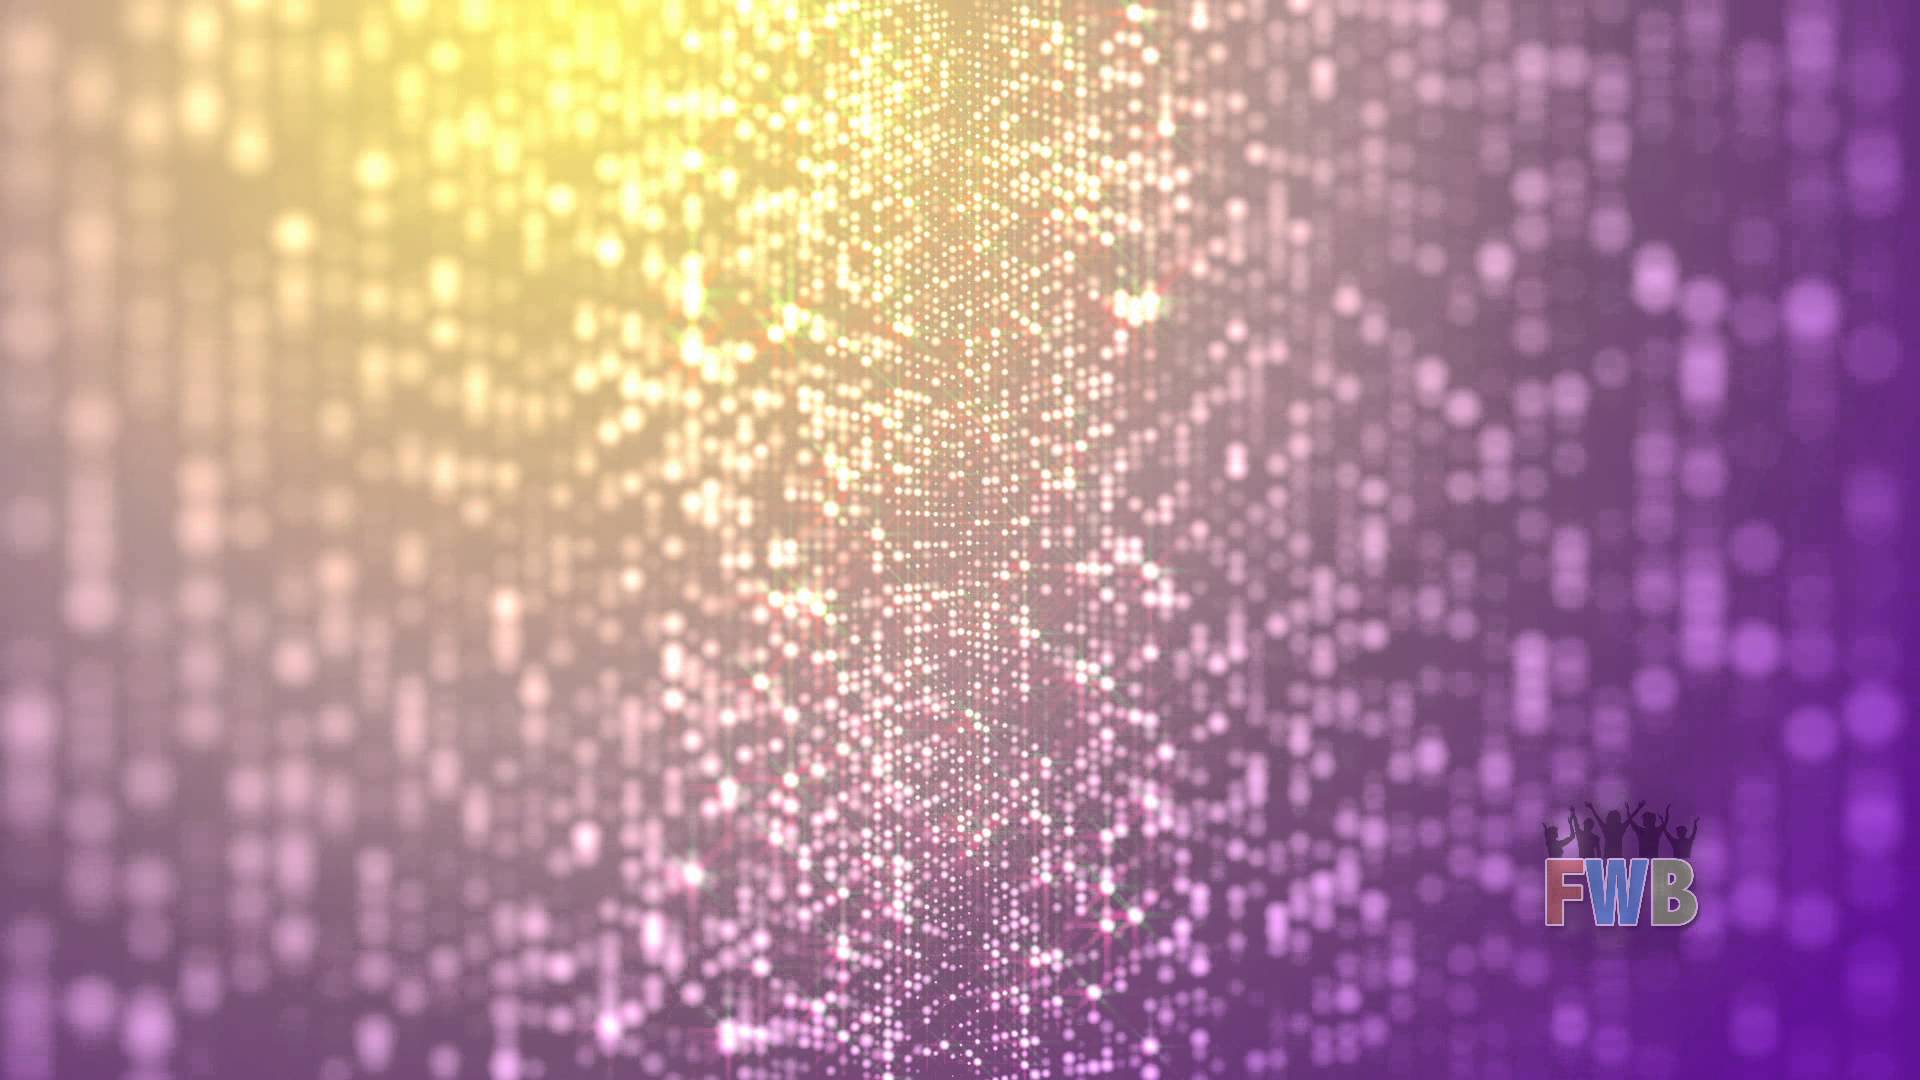 Raining Glitter Background - wallpaper.